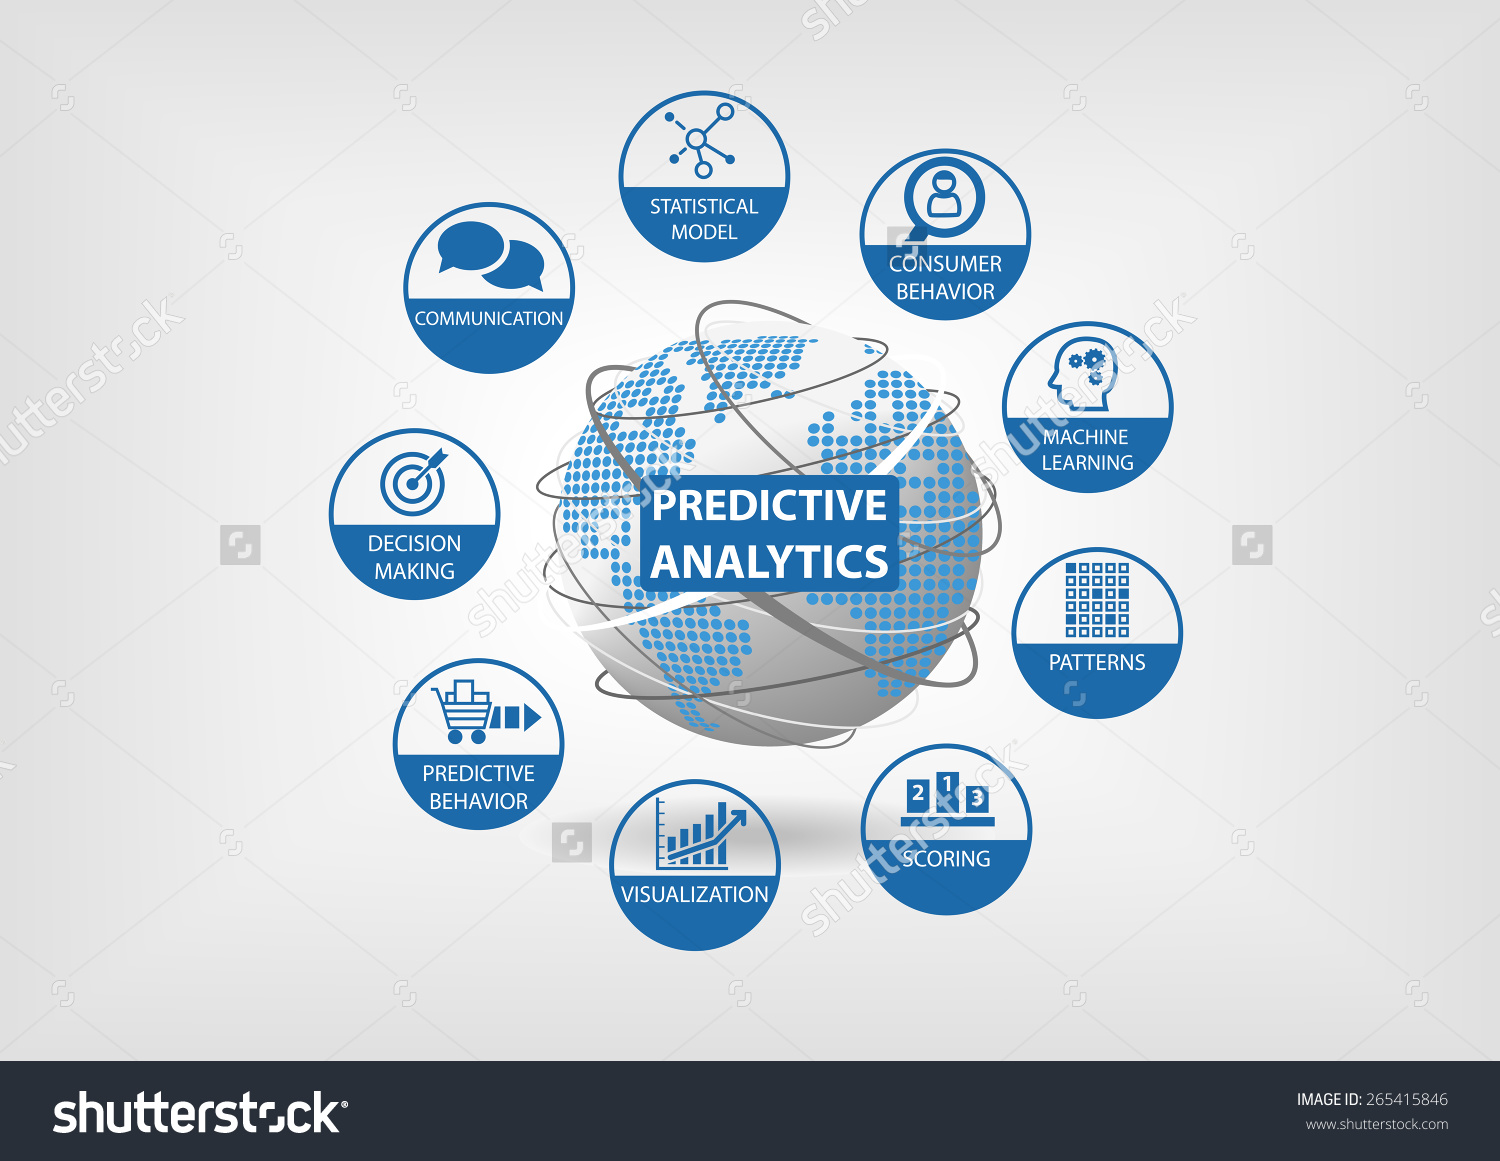 Predictive Data Analytics Icon